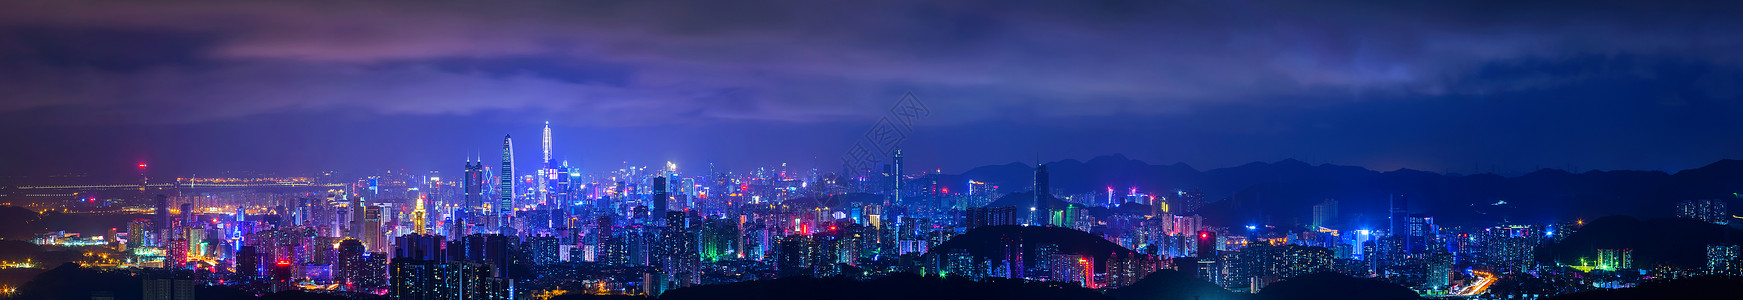 雅基深圳城市夜景背景